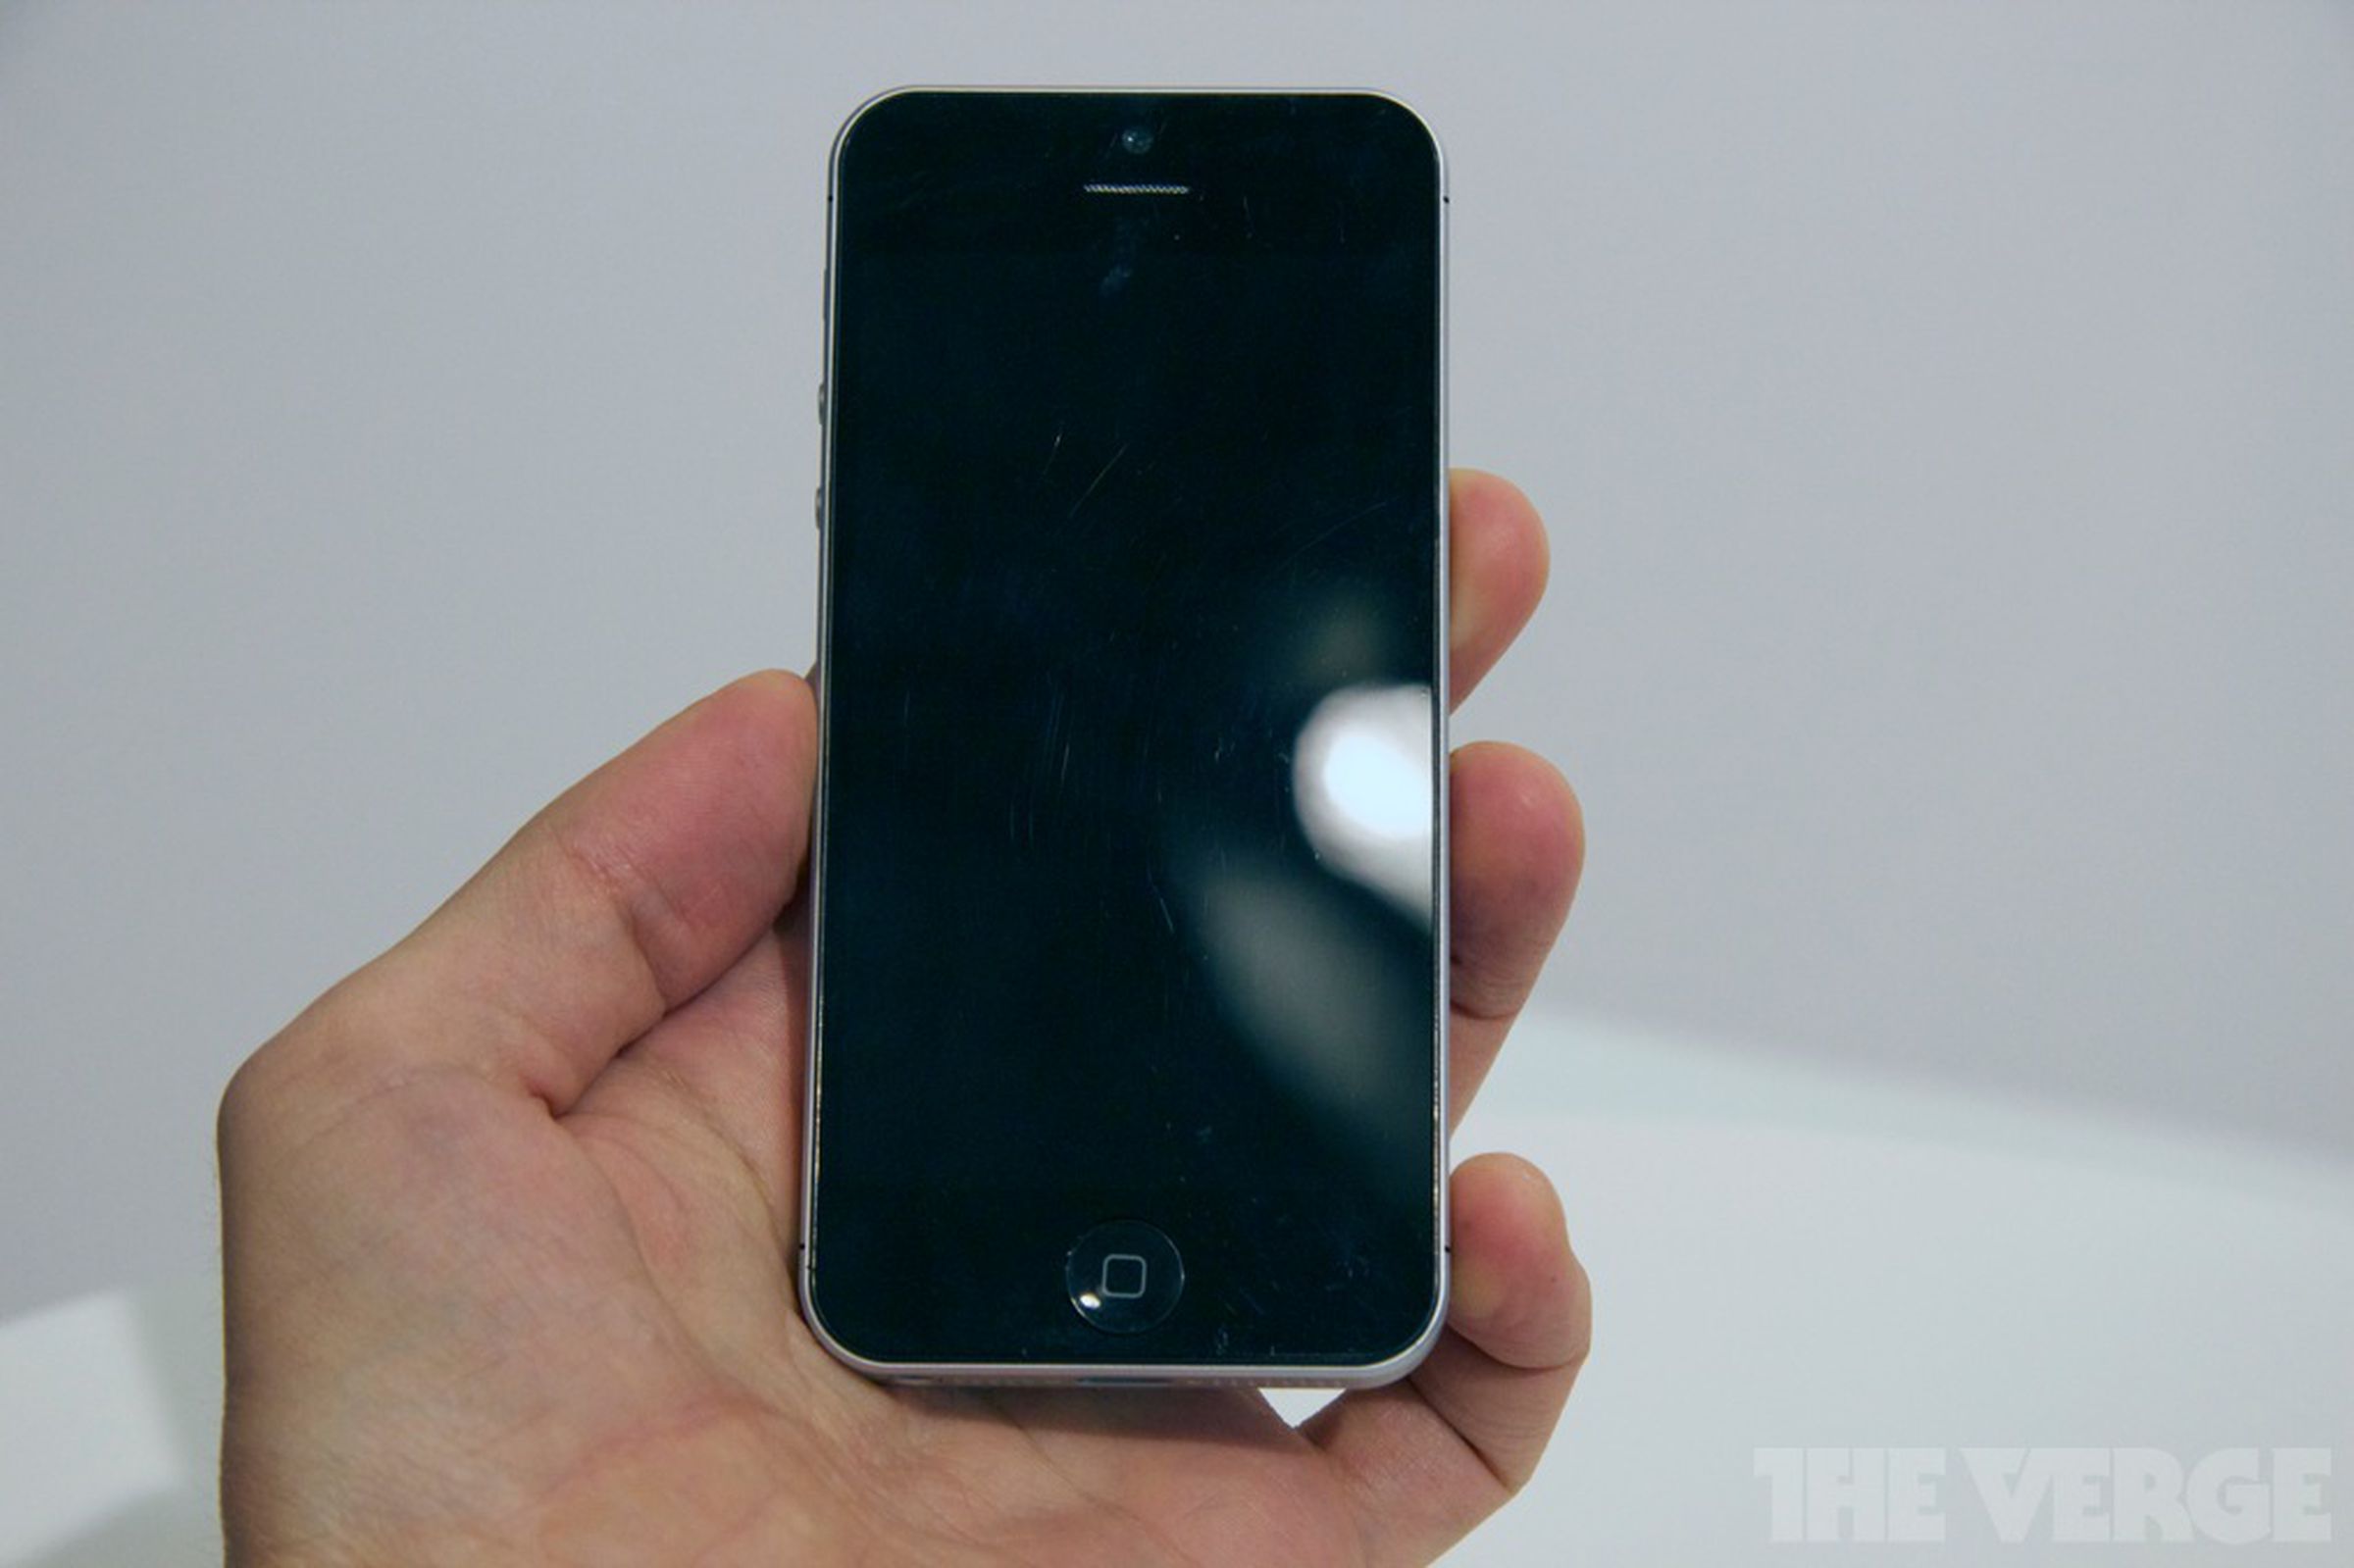 iPhone 5 mockup at IFA 2012